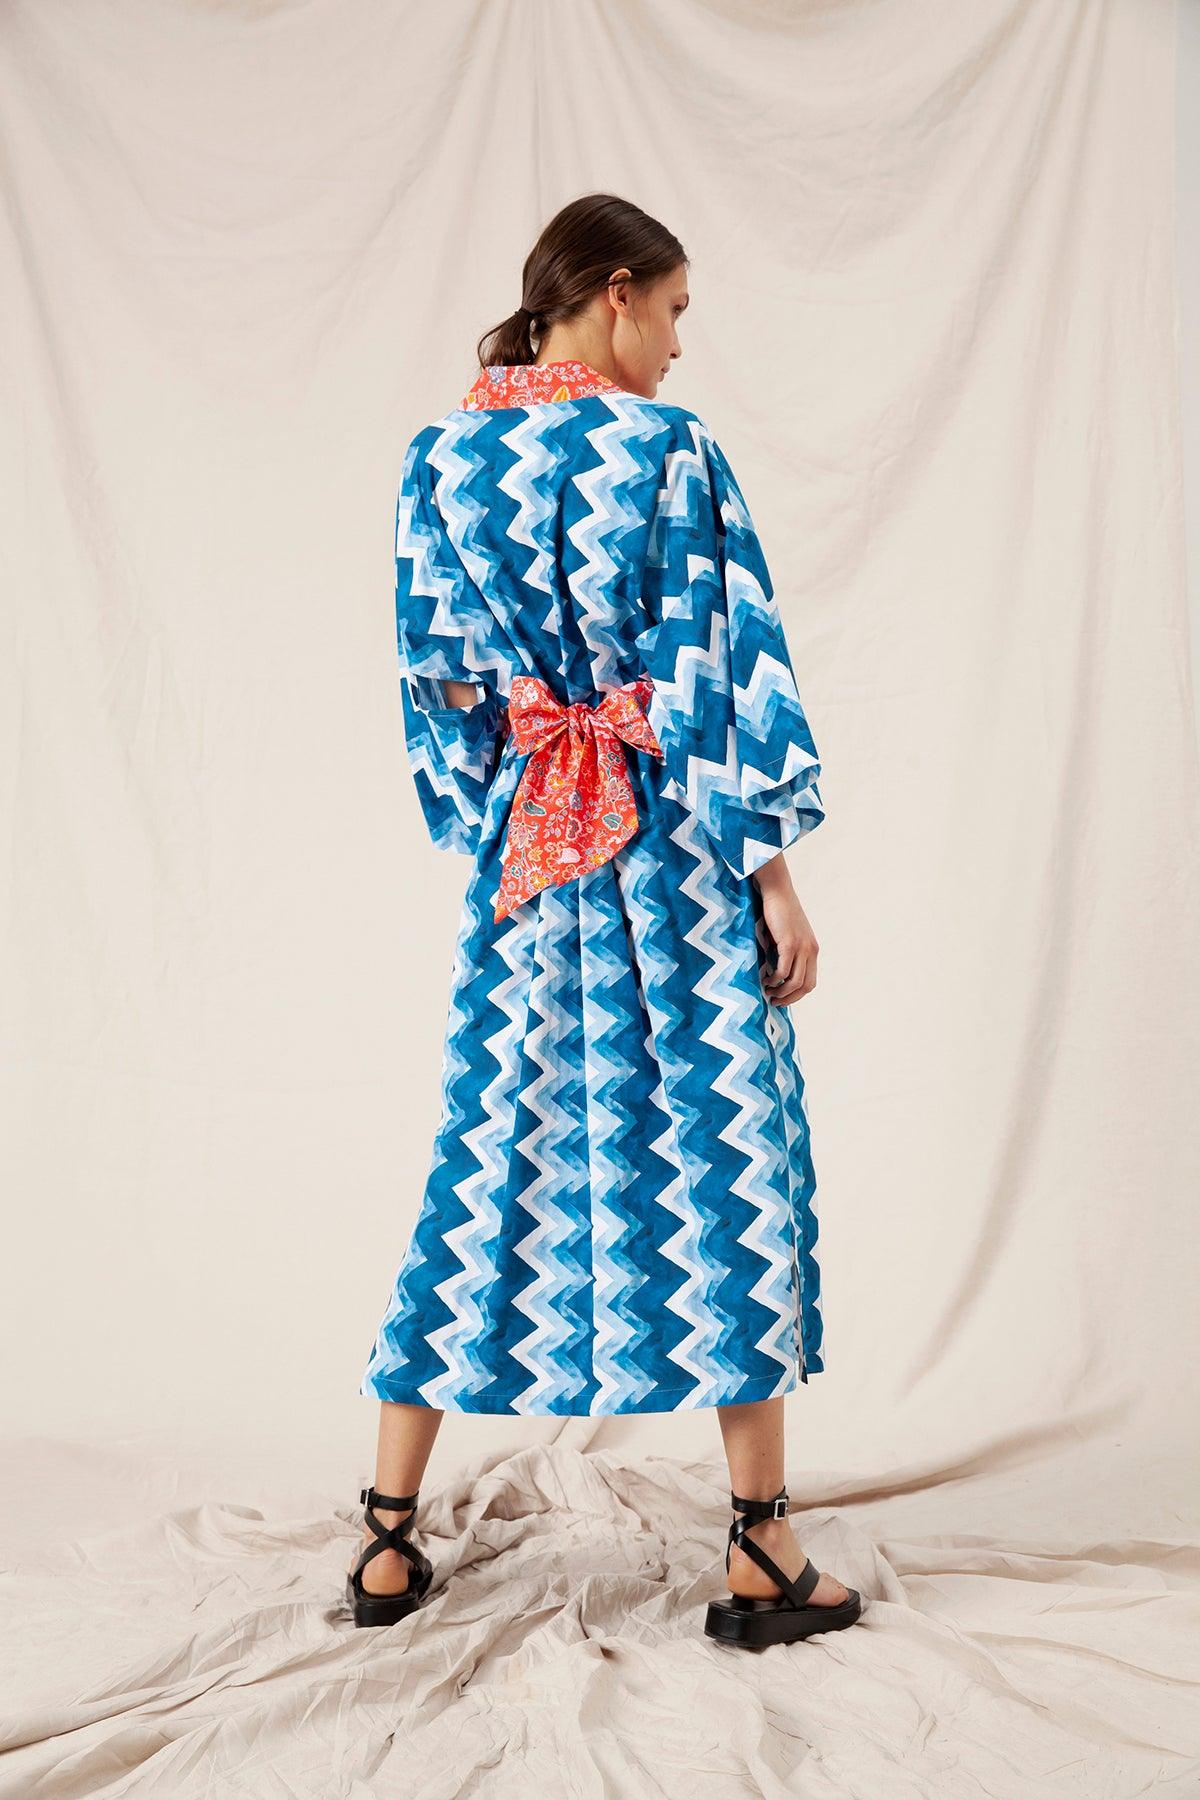 Althea Kimono by Ladiesse